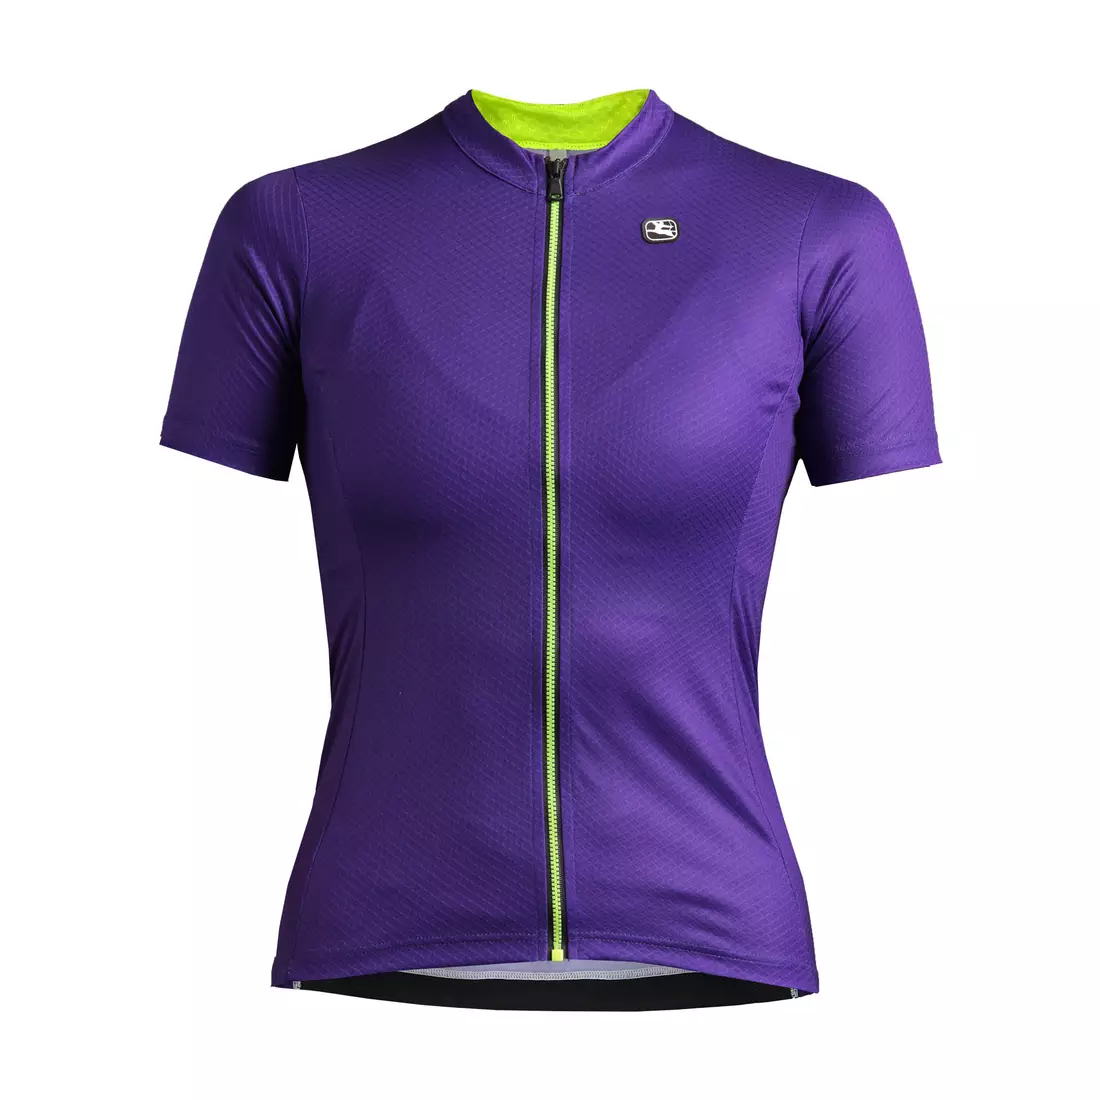 GIORDANA FUSION women's cycling jersey, purple